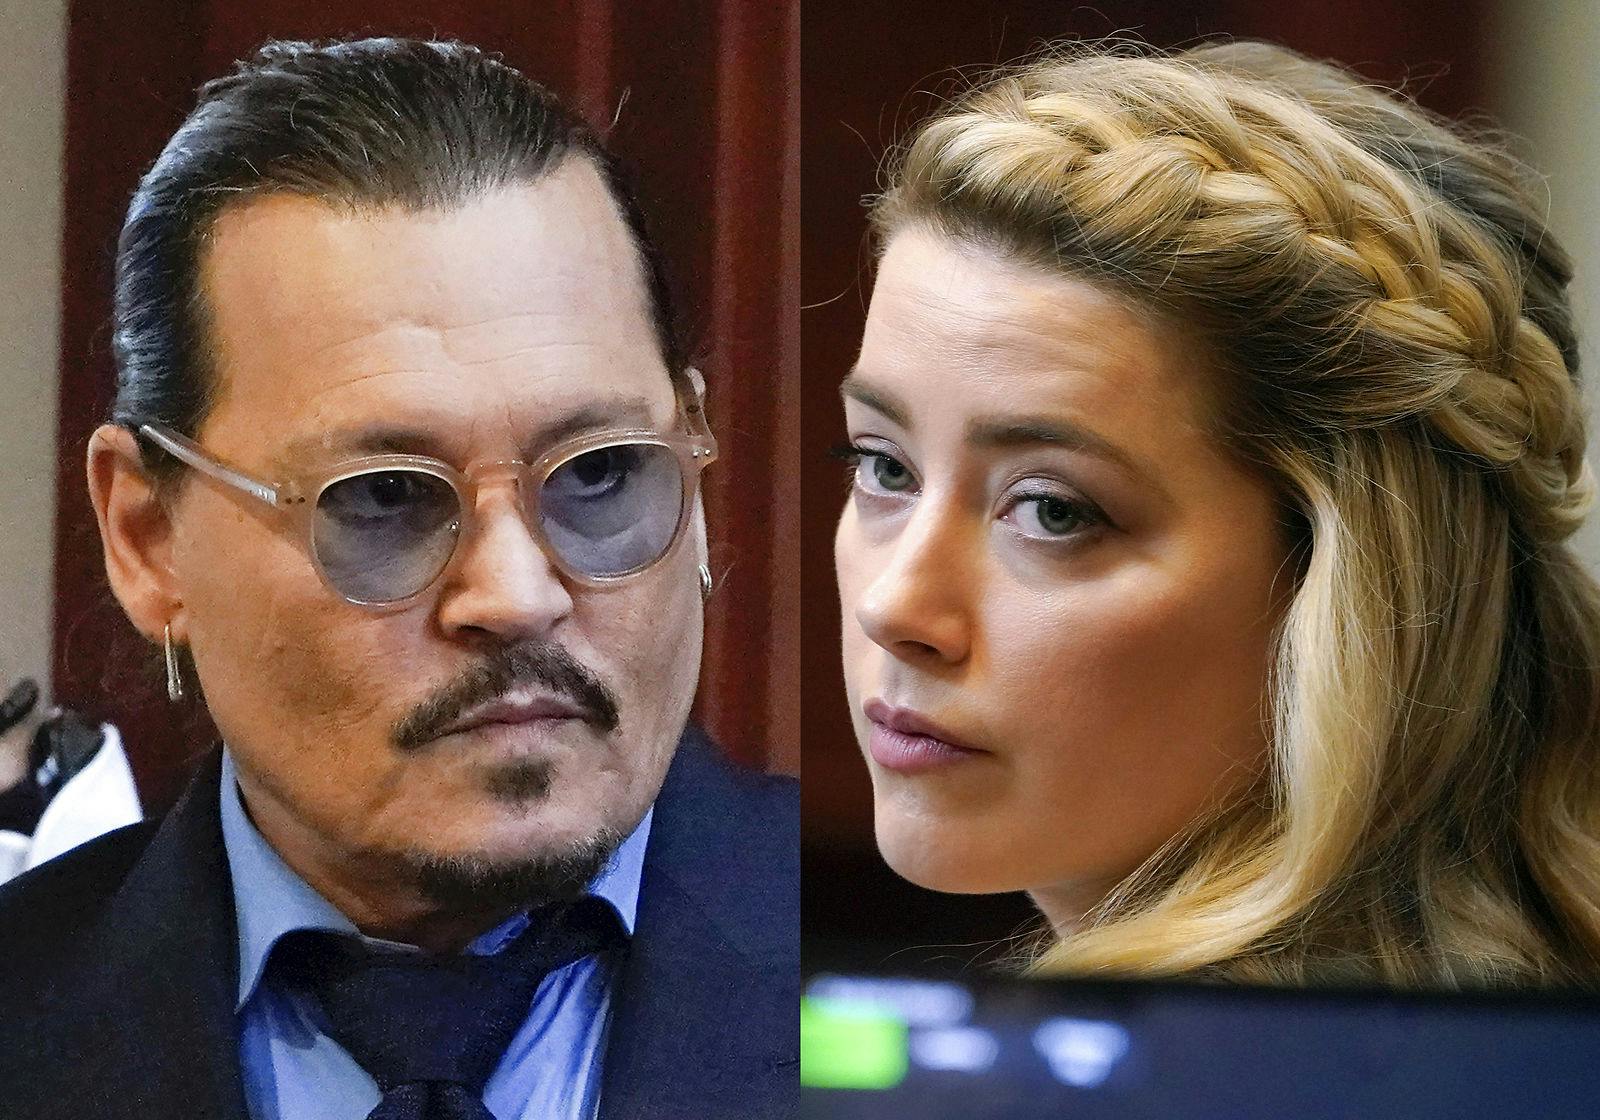 Retssagen mellem Johnny Depp og Amber Heard er endelig afsluttet.